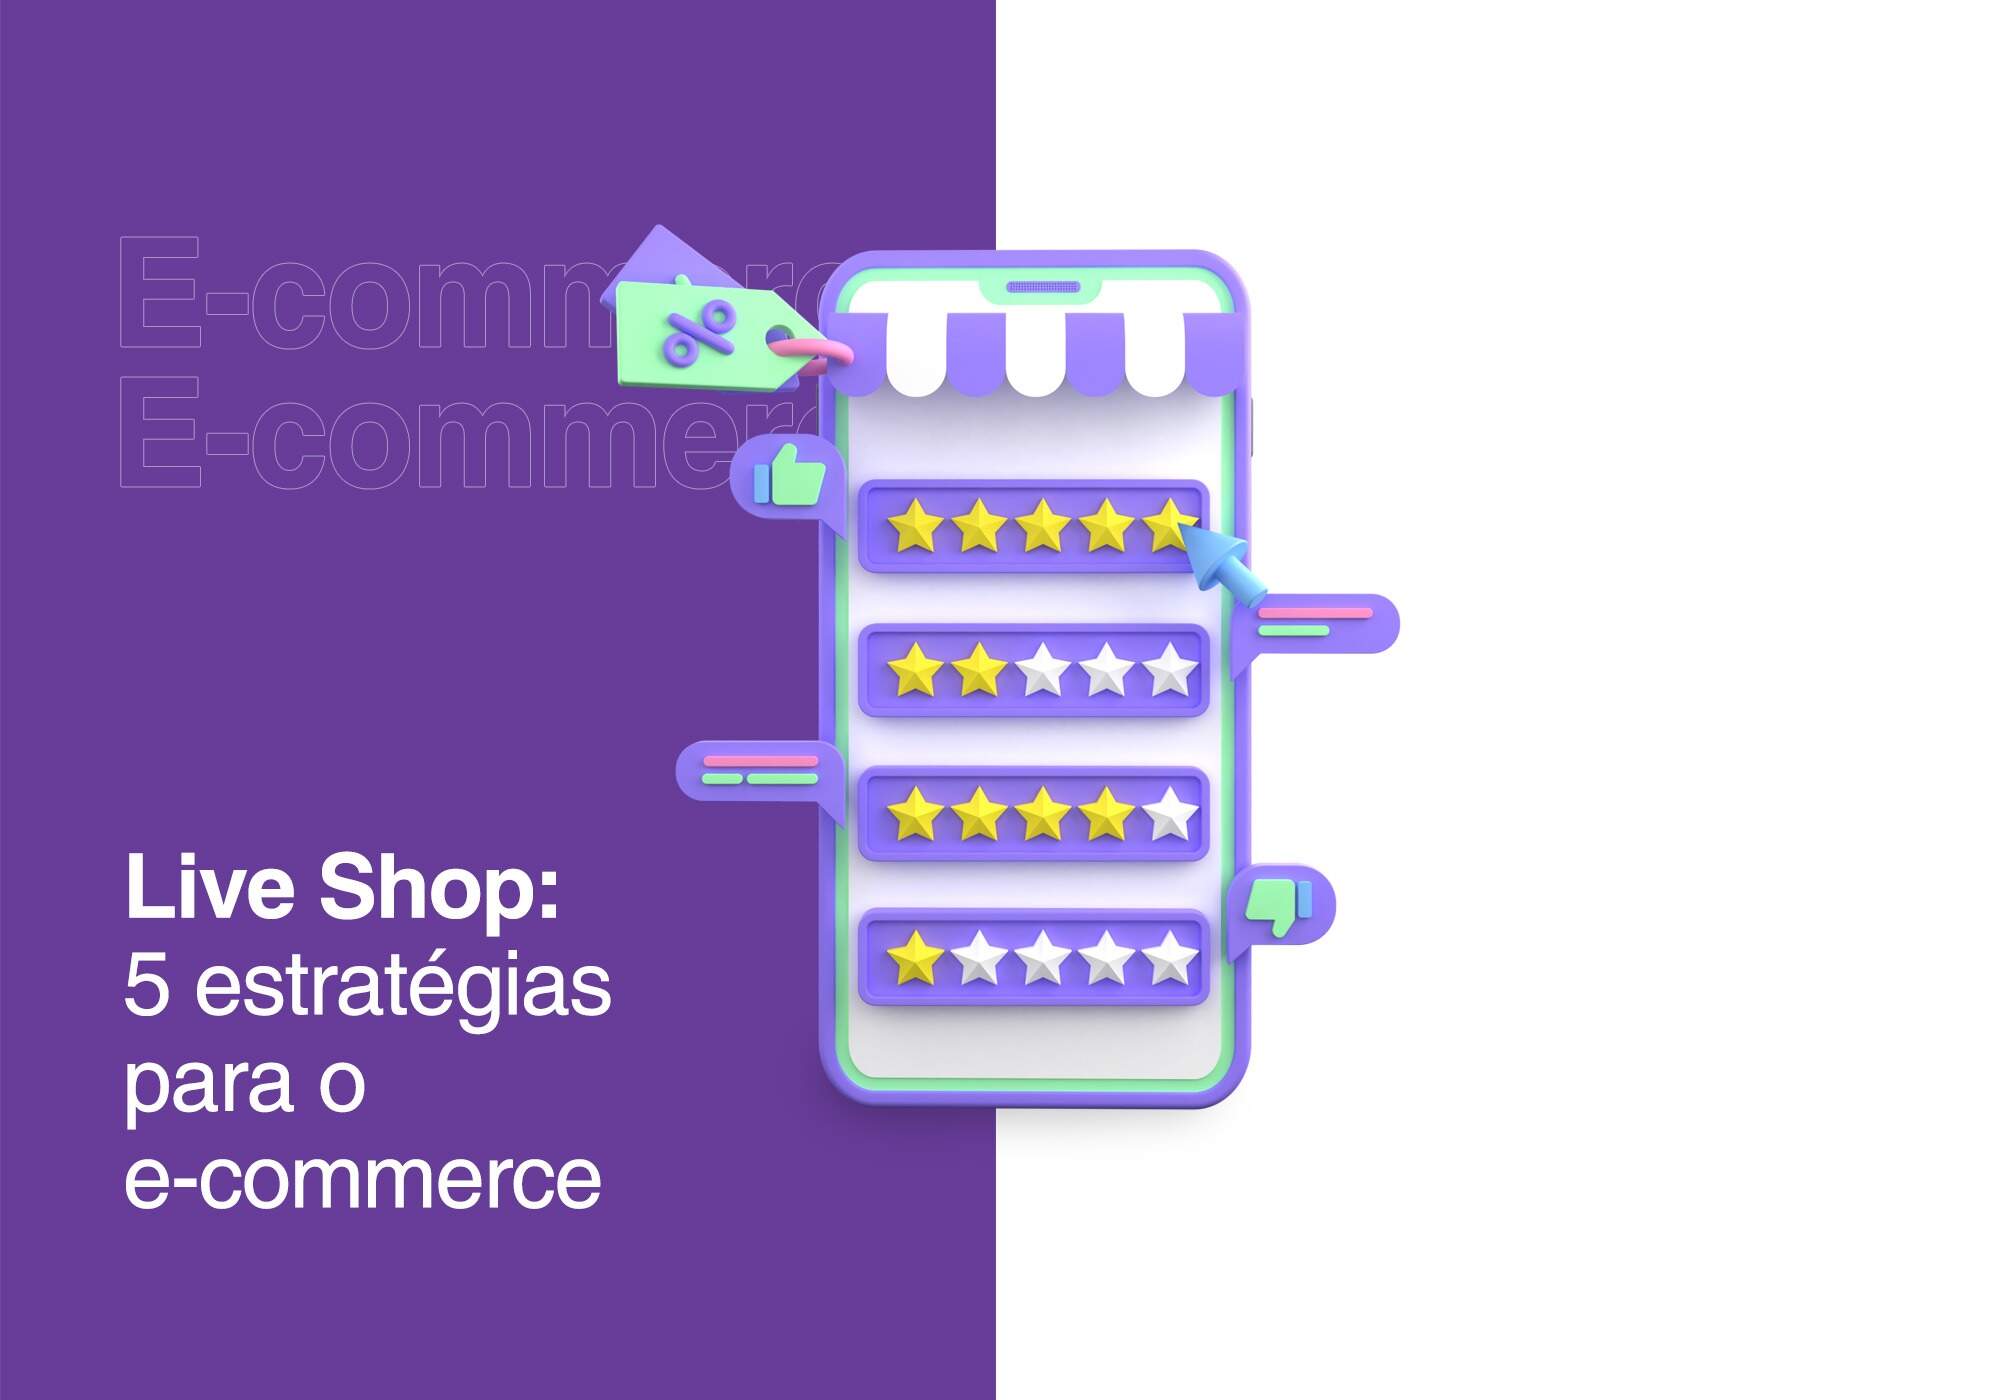 Live Shop: 5 estratégias para o e-commerce